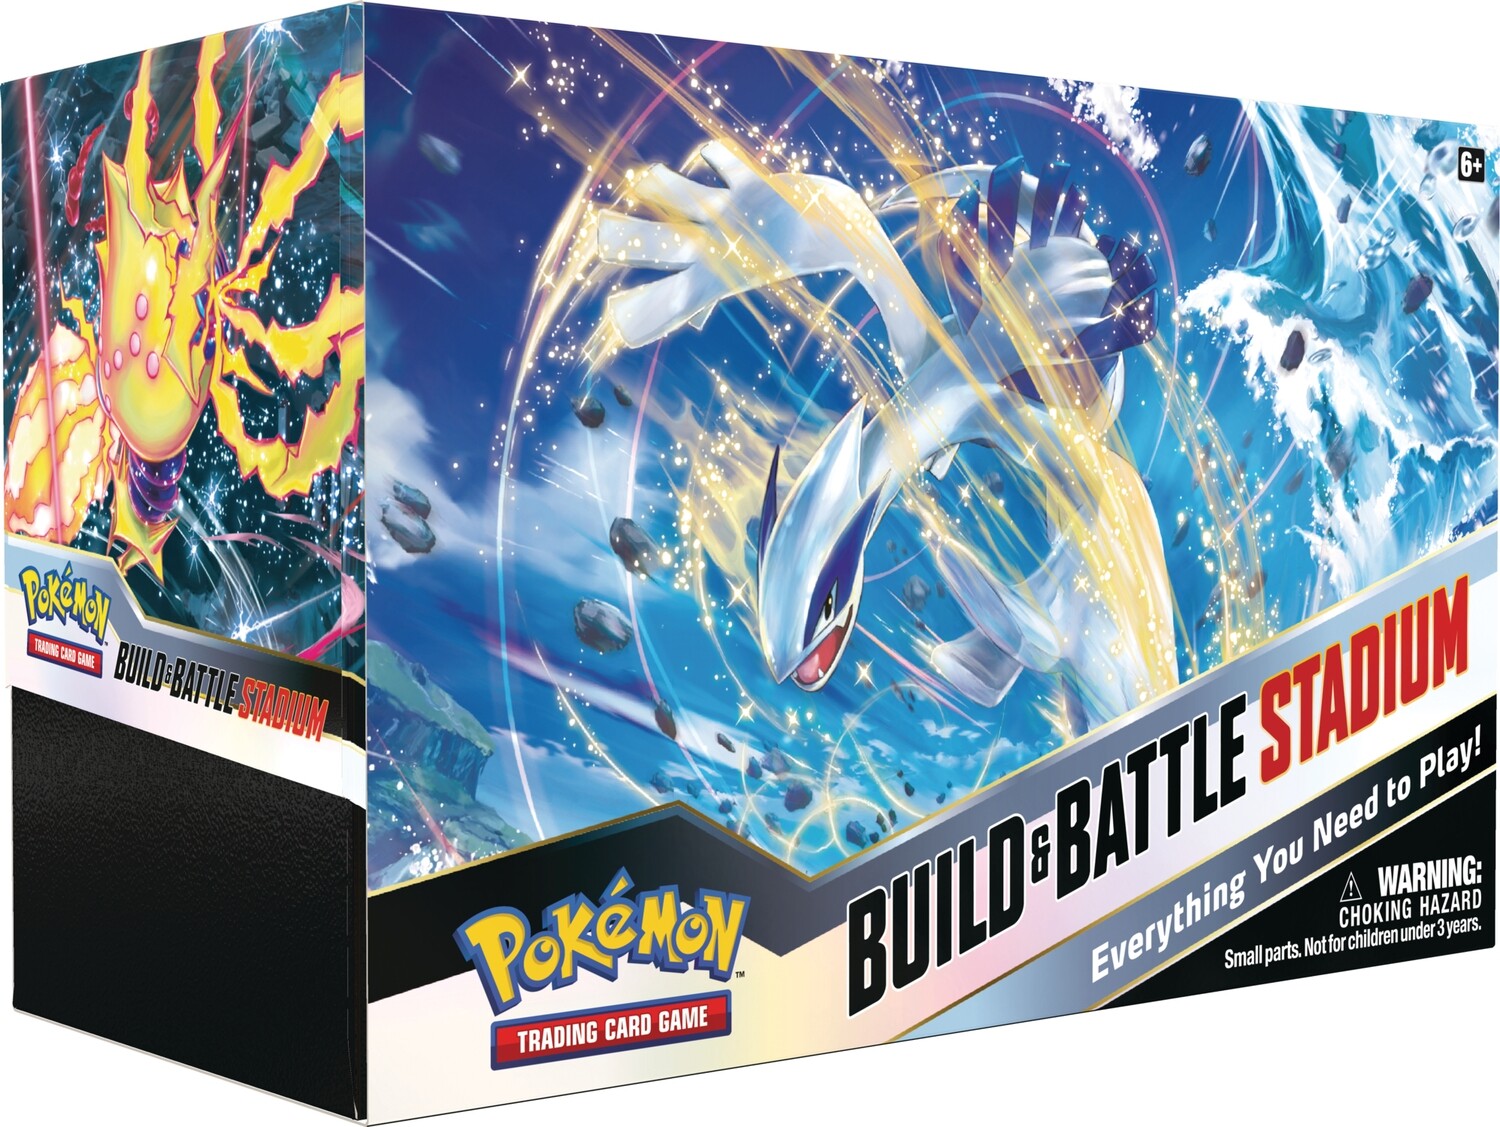 Silberne Sturmwinde Build & Battle Stadium Pokémon